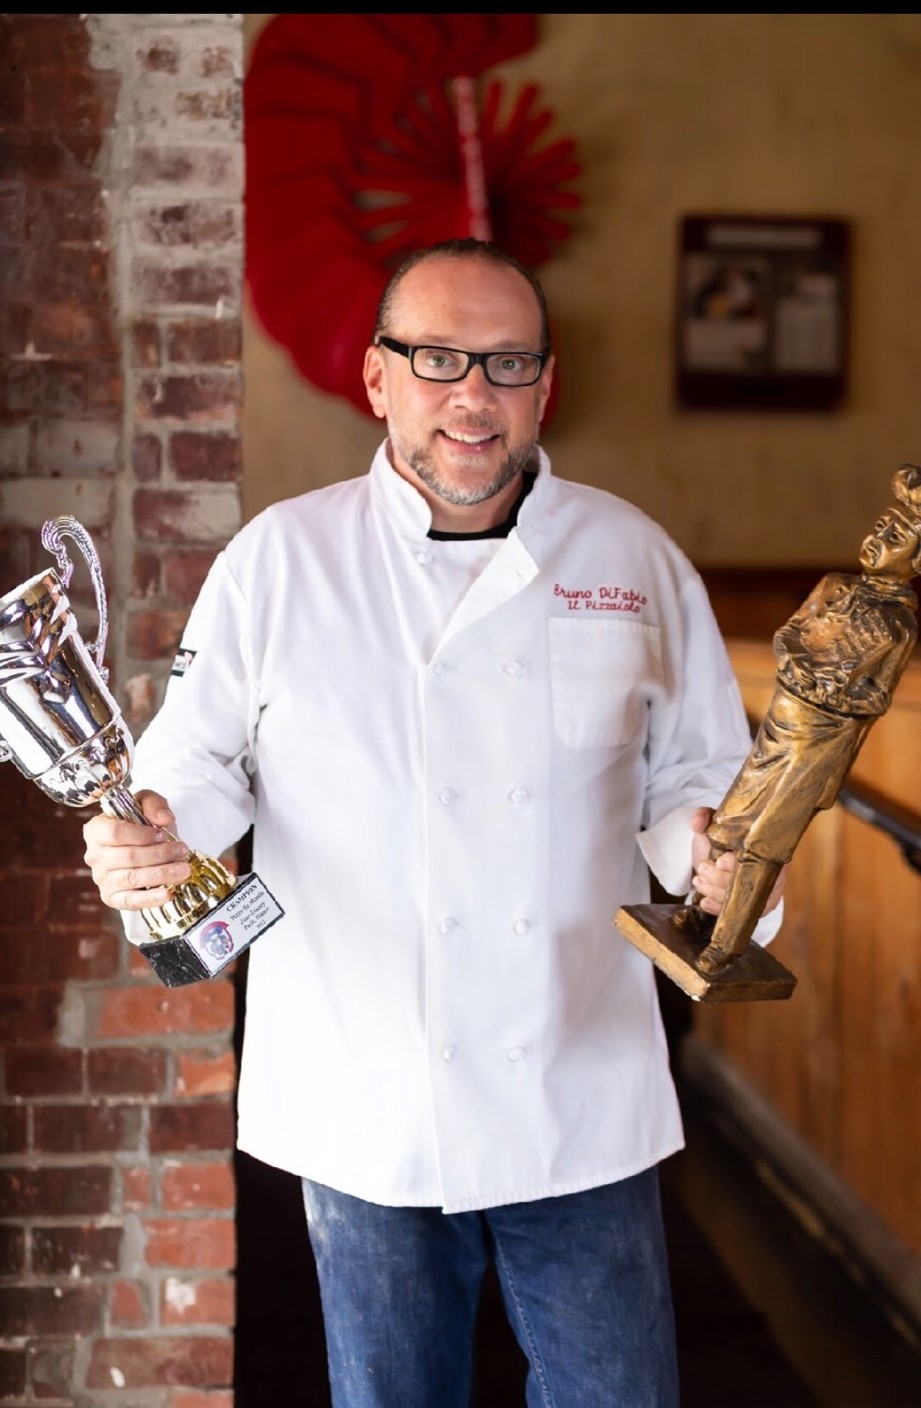 Bruno DiFabio has won many awards for pizza making. Courtesy photo